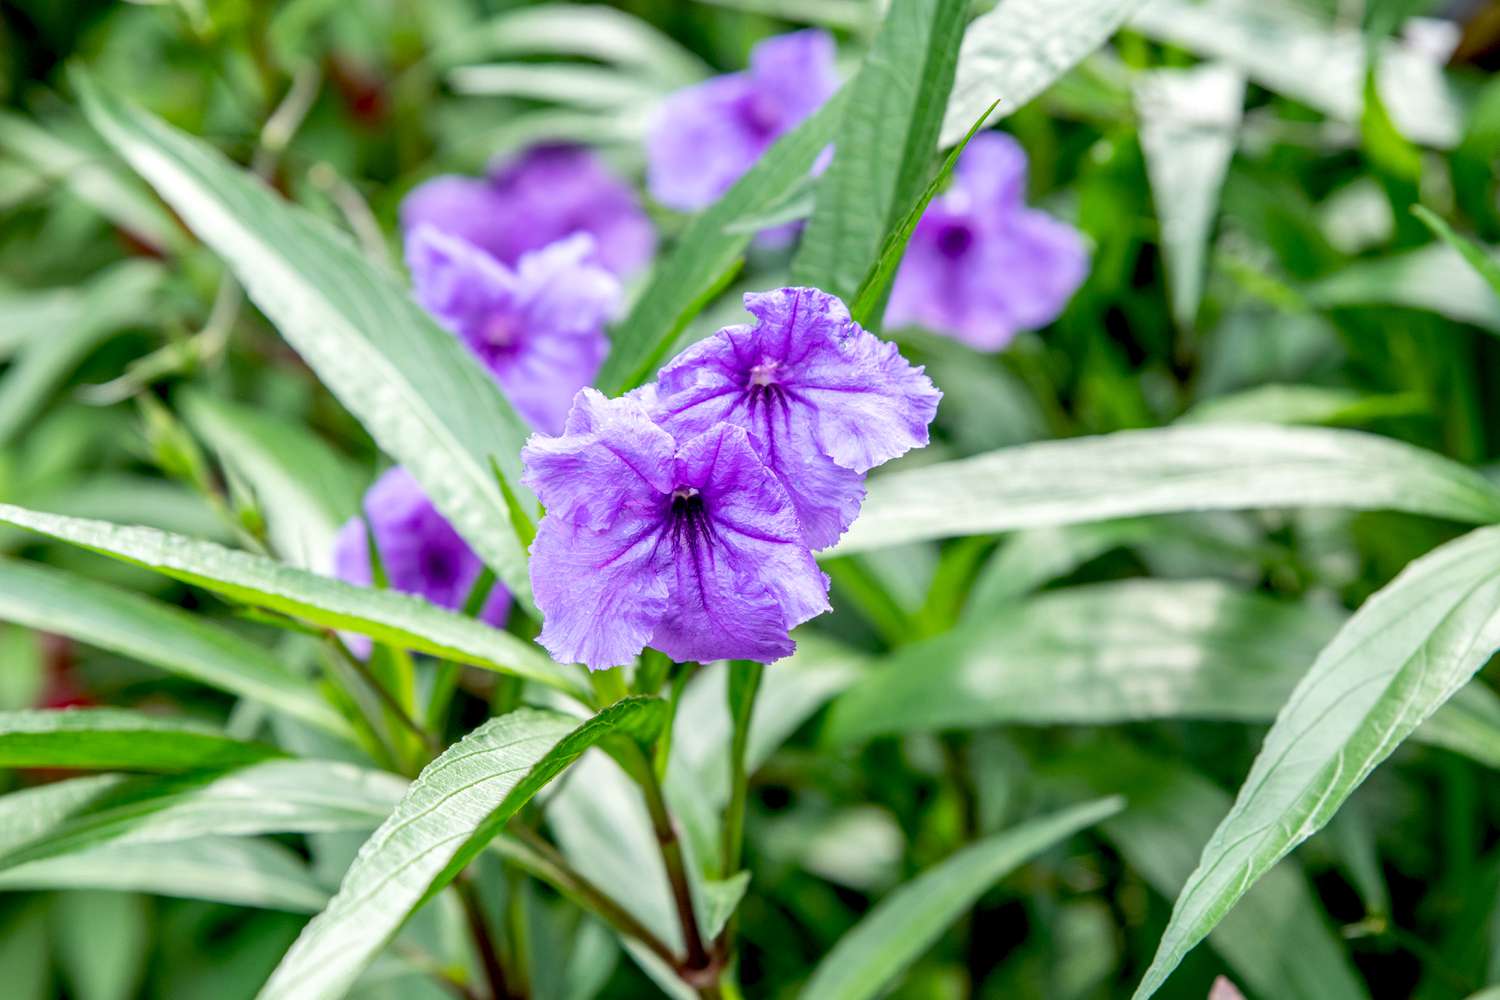 Planta de petunia mexicana con flores de color púrpura intenso en un tallo con largas láminas foliares